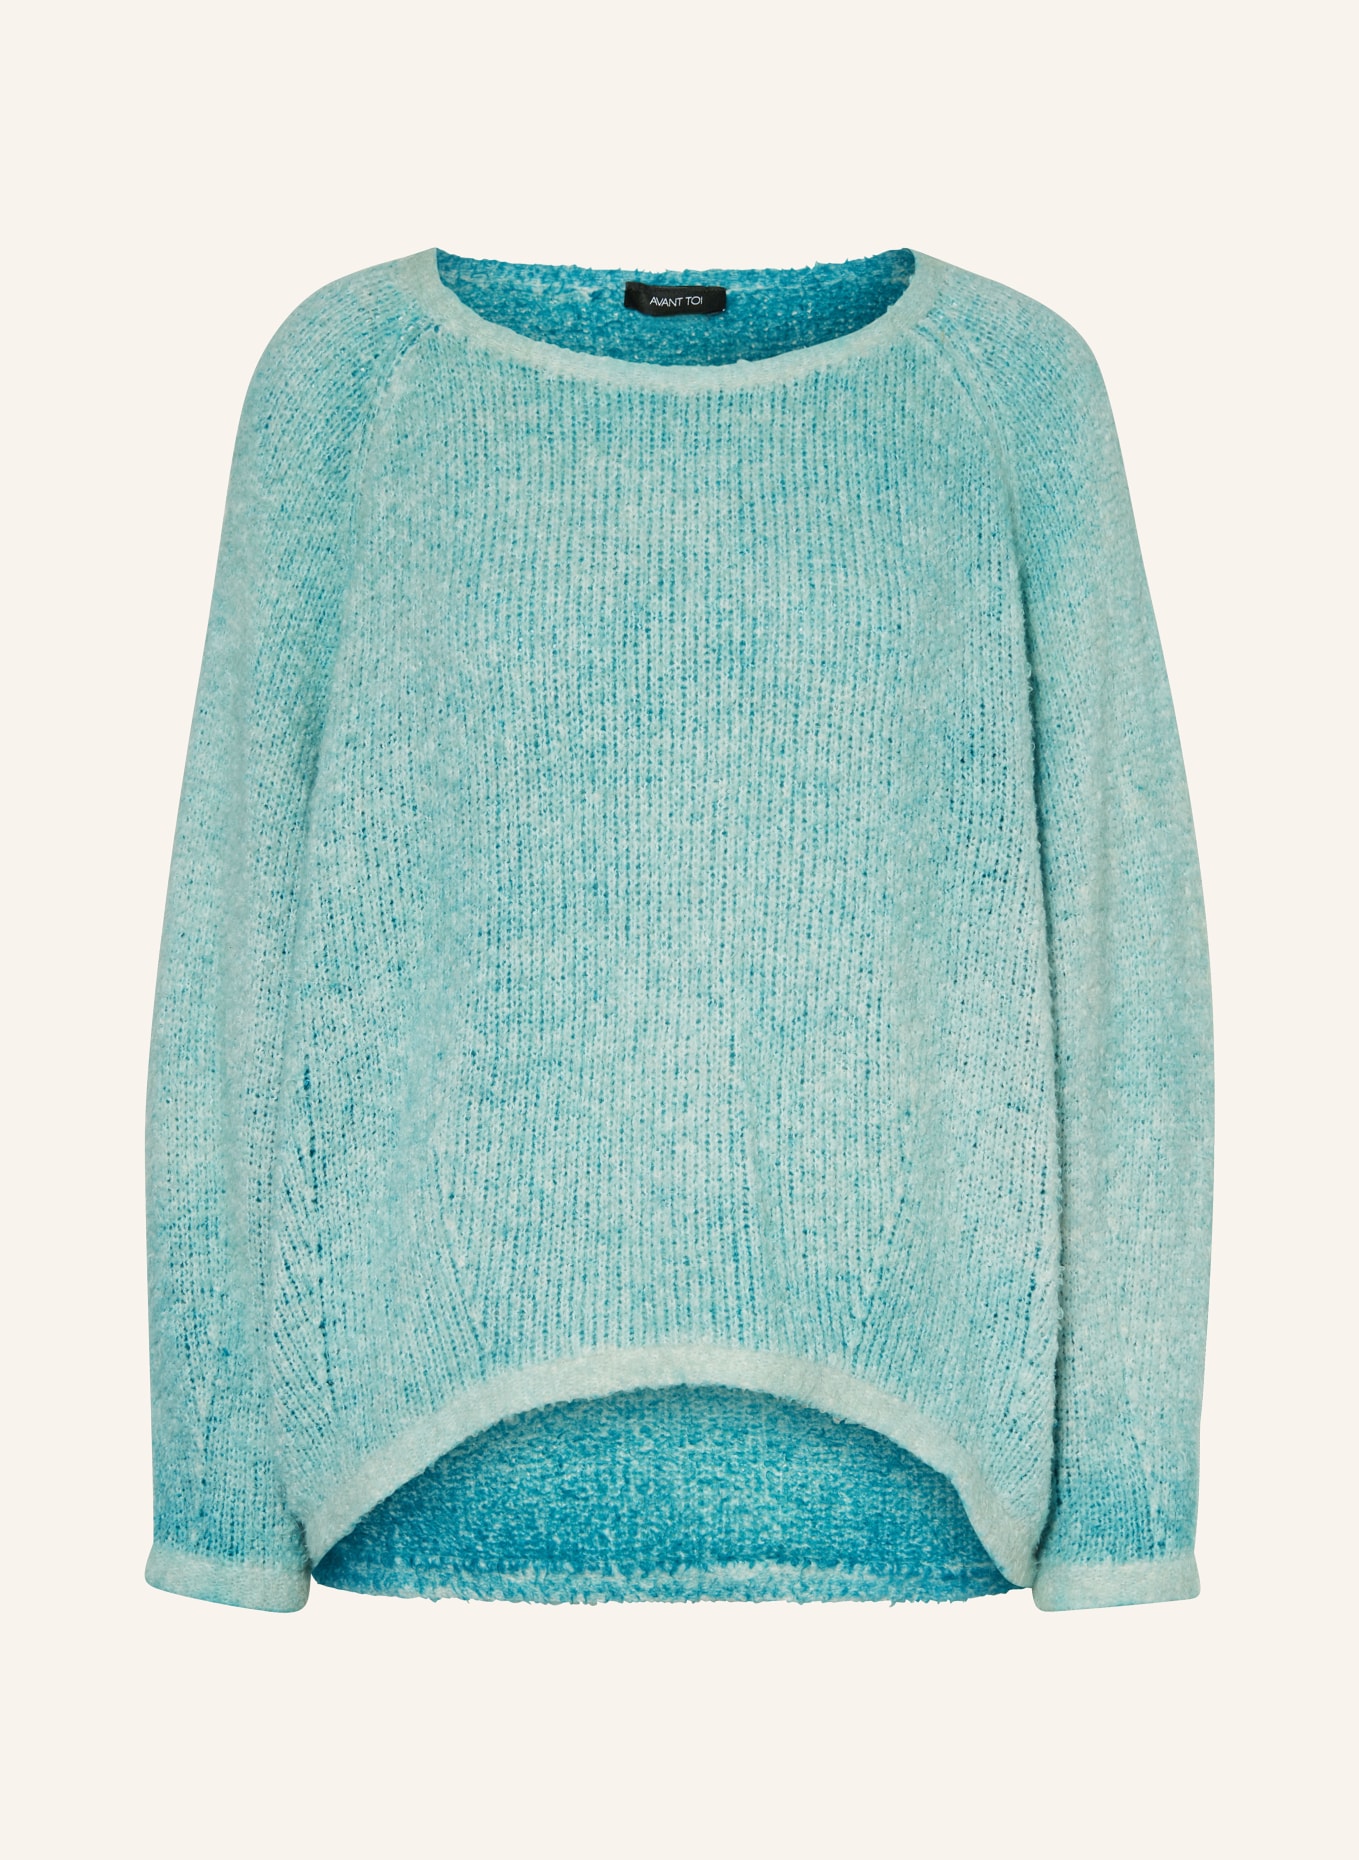 AVANT TOI Sweater, Color: 628 jade grün (Image 1)